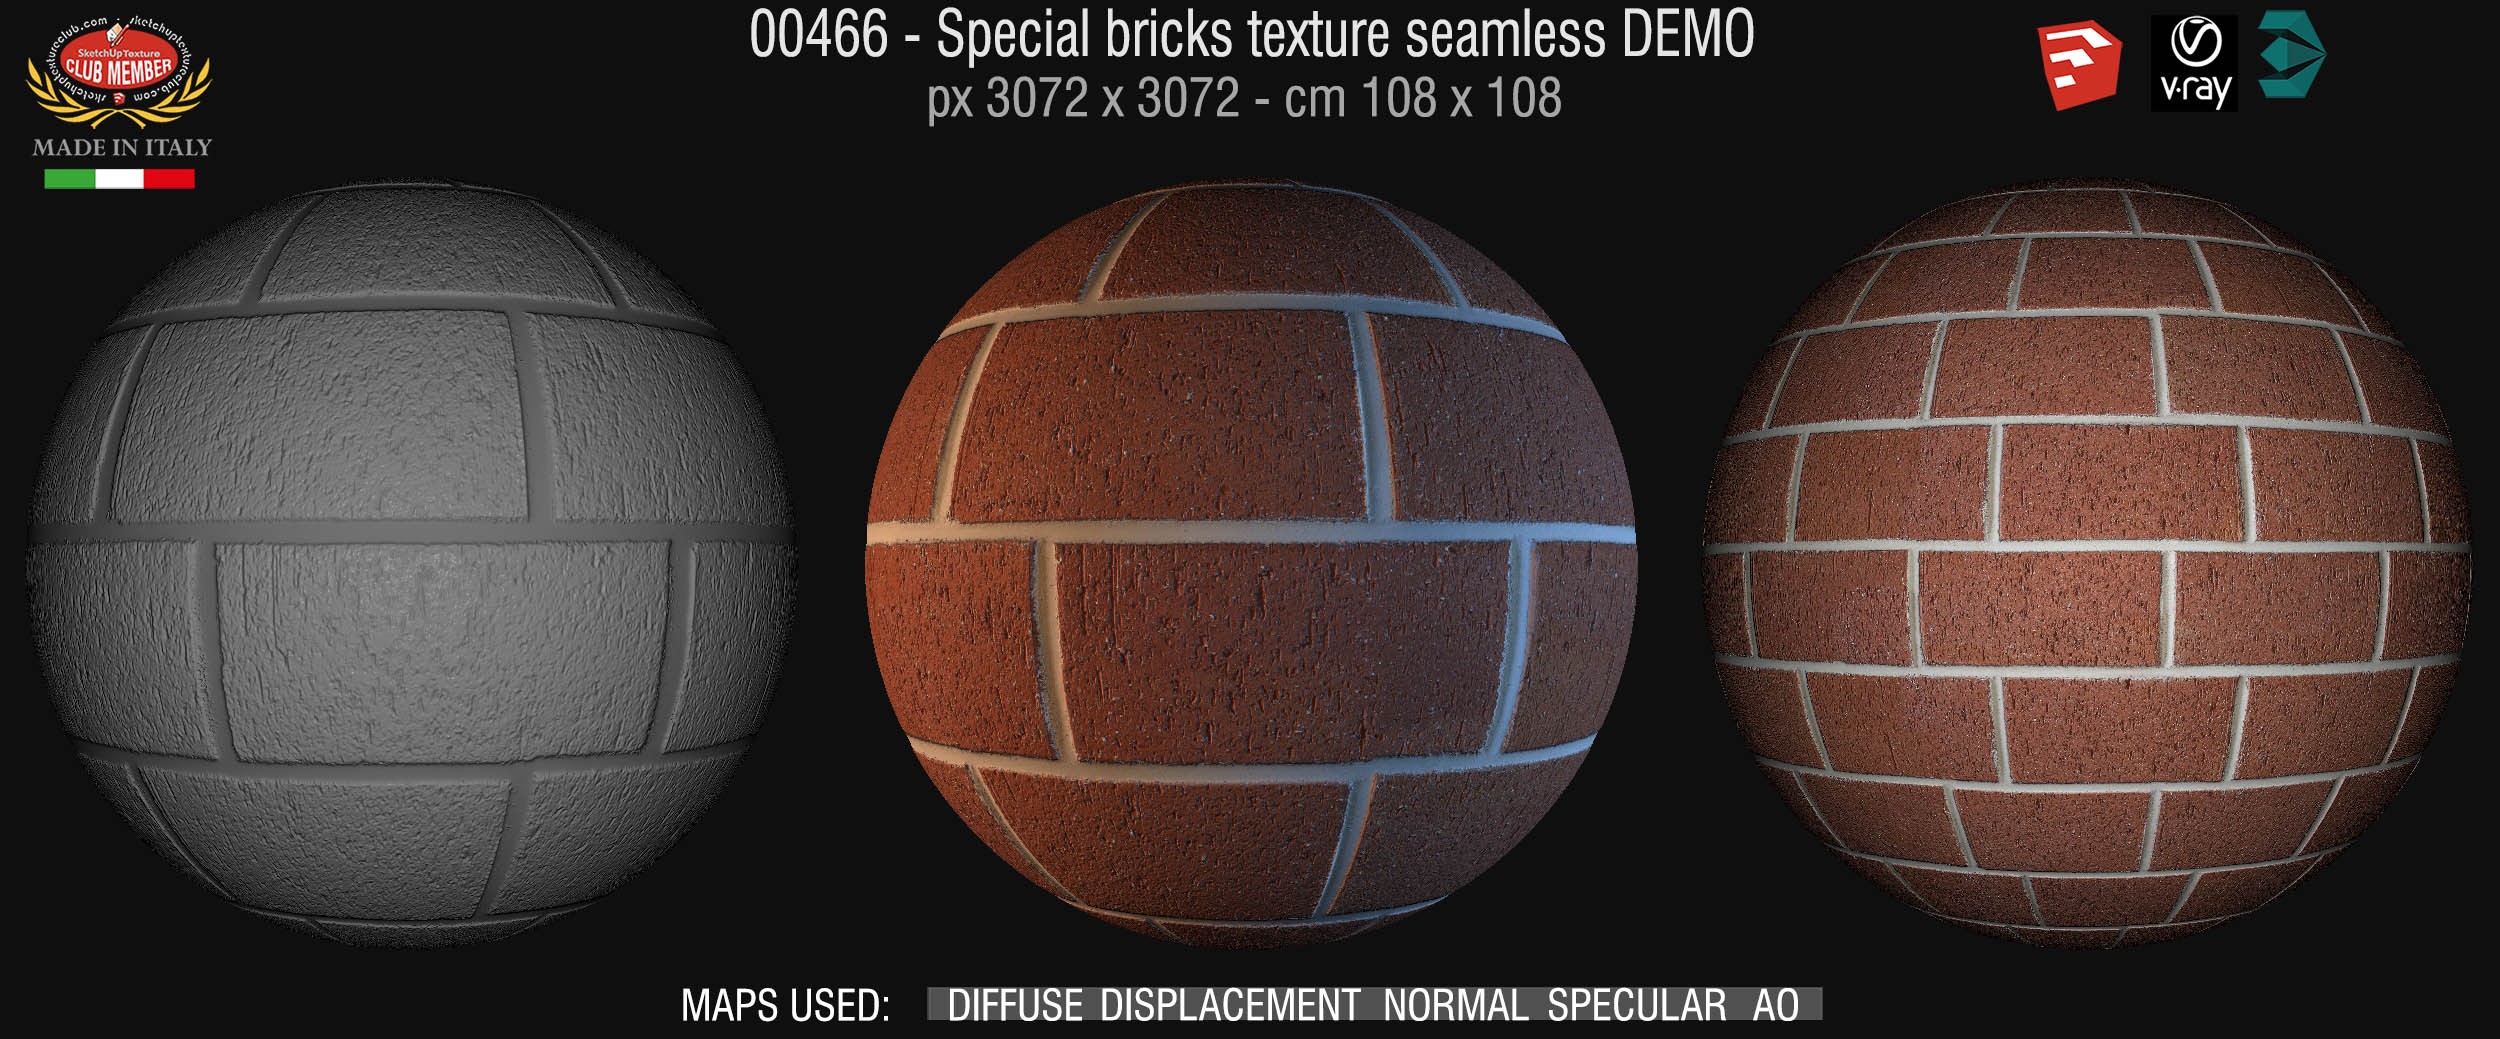 00466 Special bricks texture seamless + maps DEMO